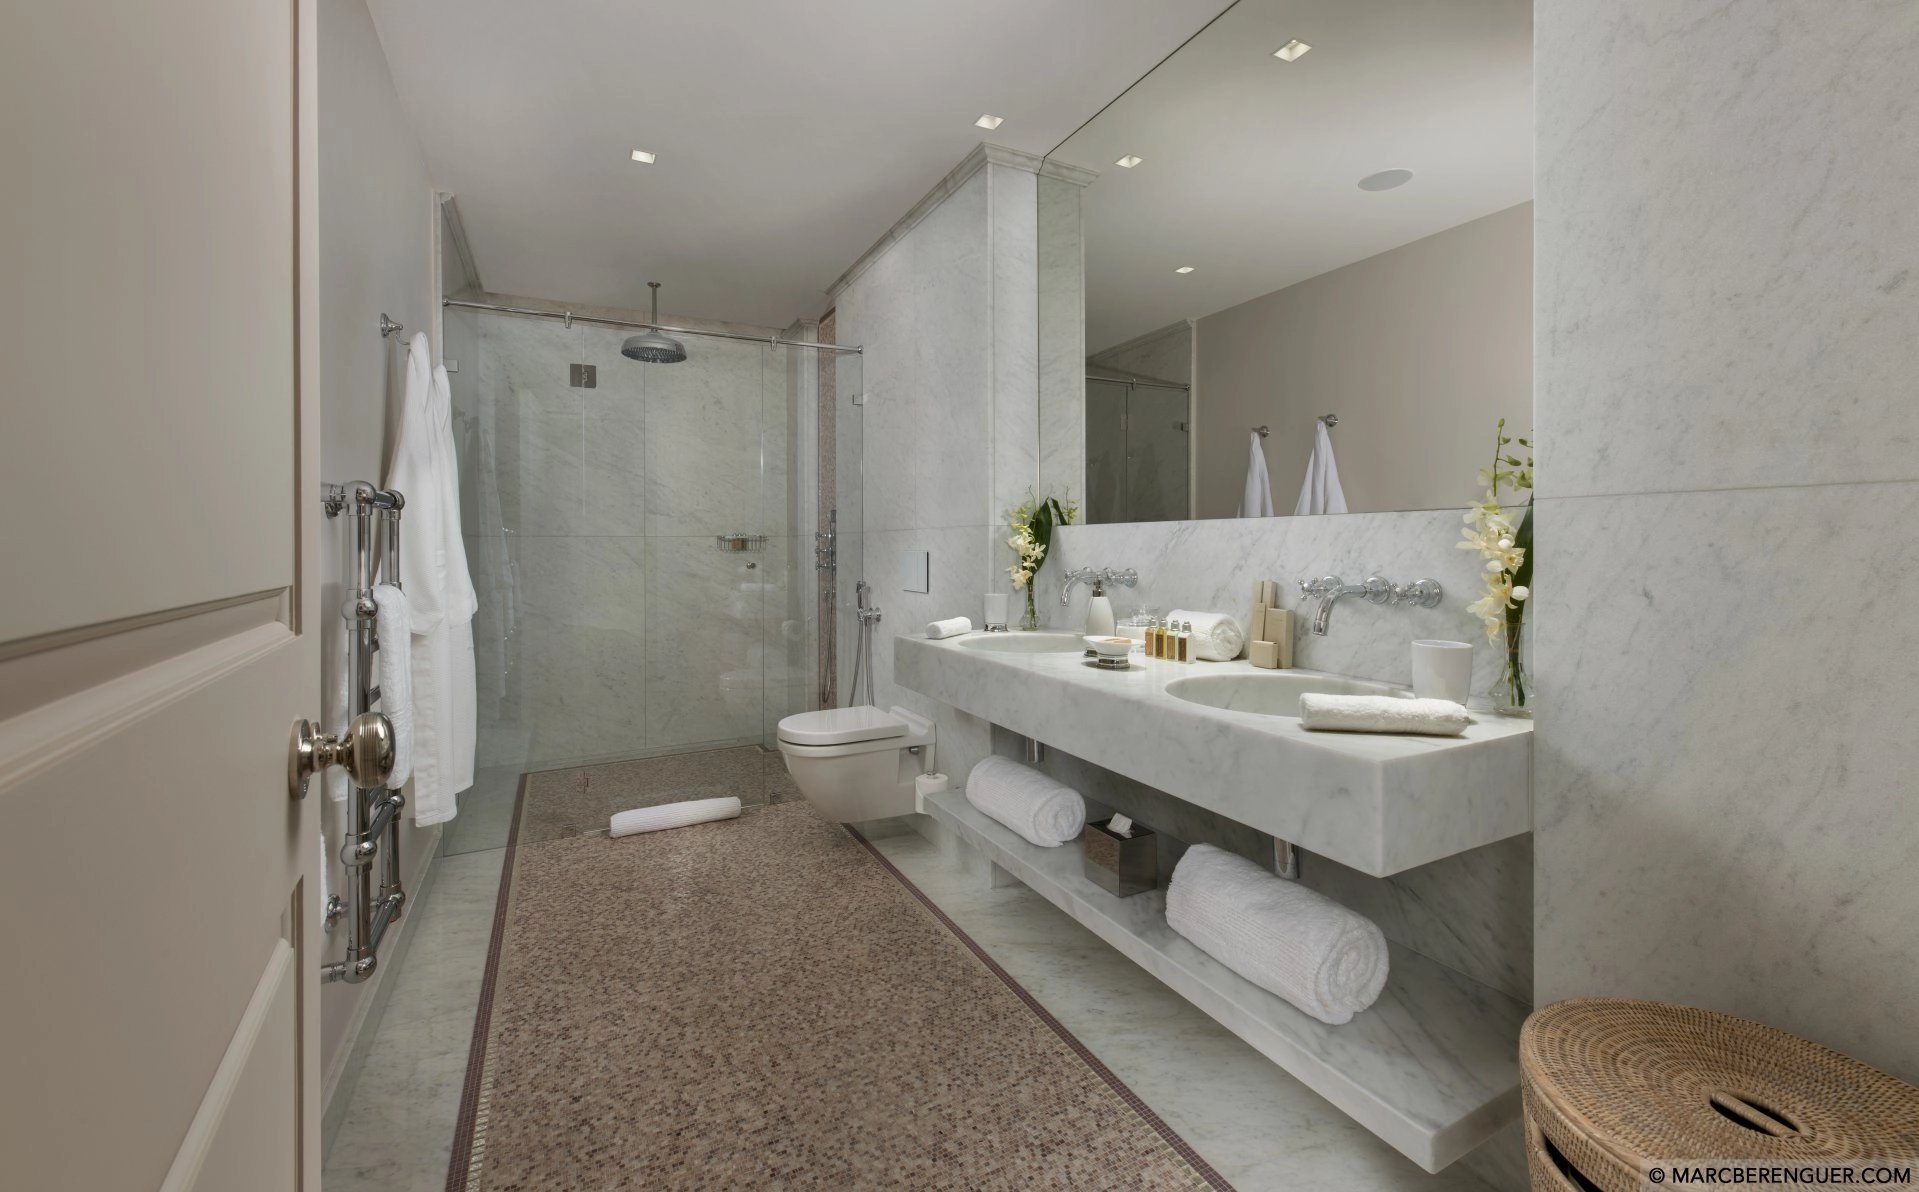 3132602-Luxueuse villa de 8 chambres dans l'enclave de St Tropez